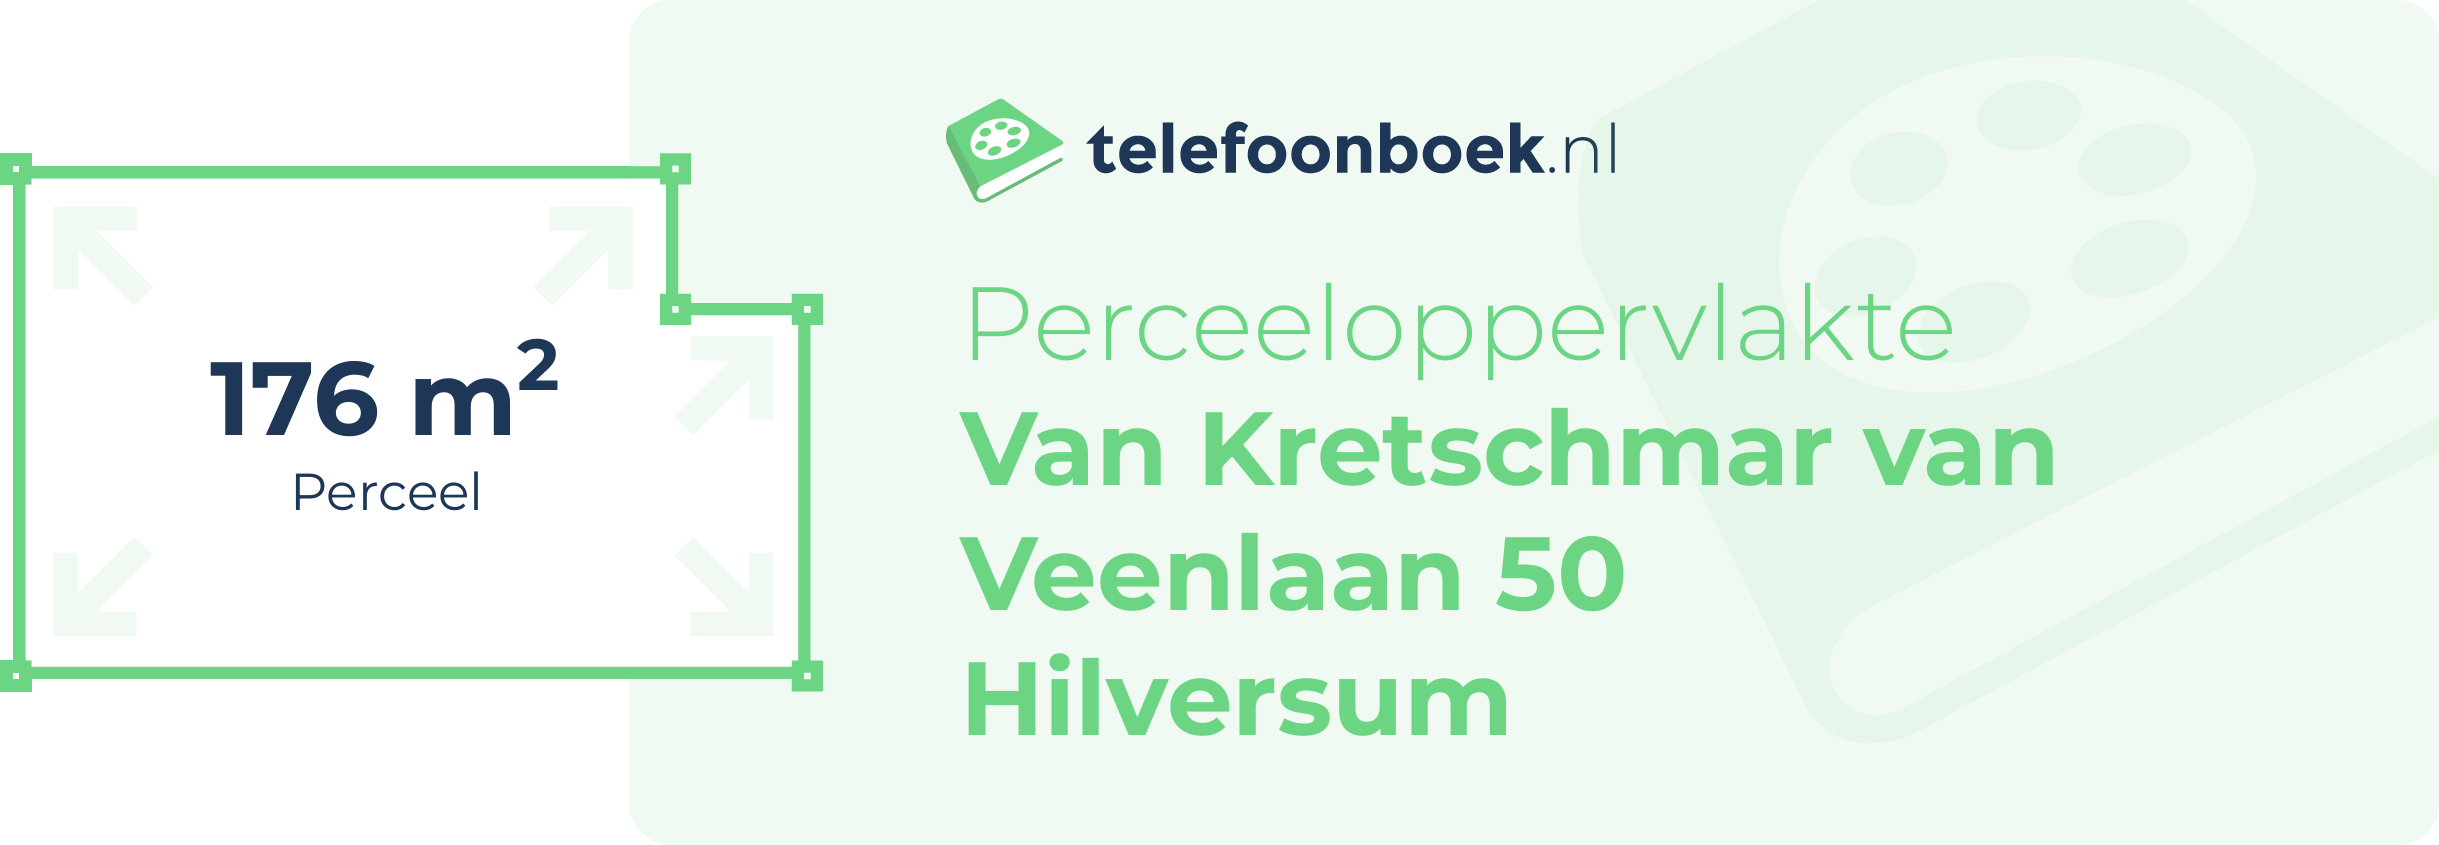 Perceeloppervlakte Van Kretschmar Van Veenlaan 50 Hilversum